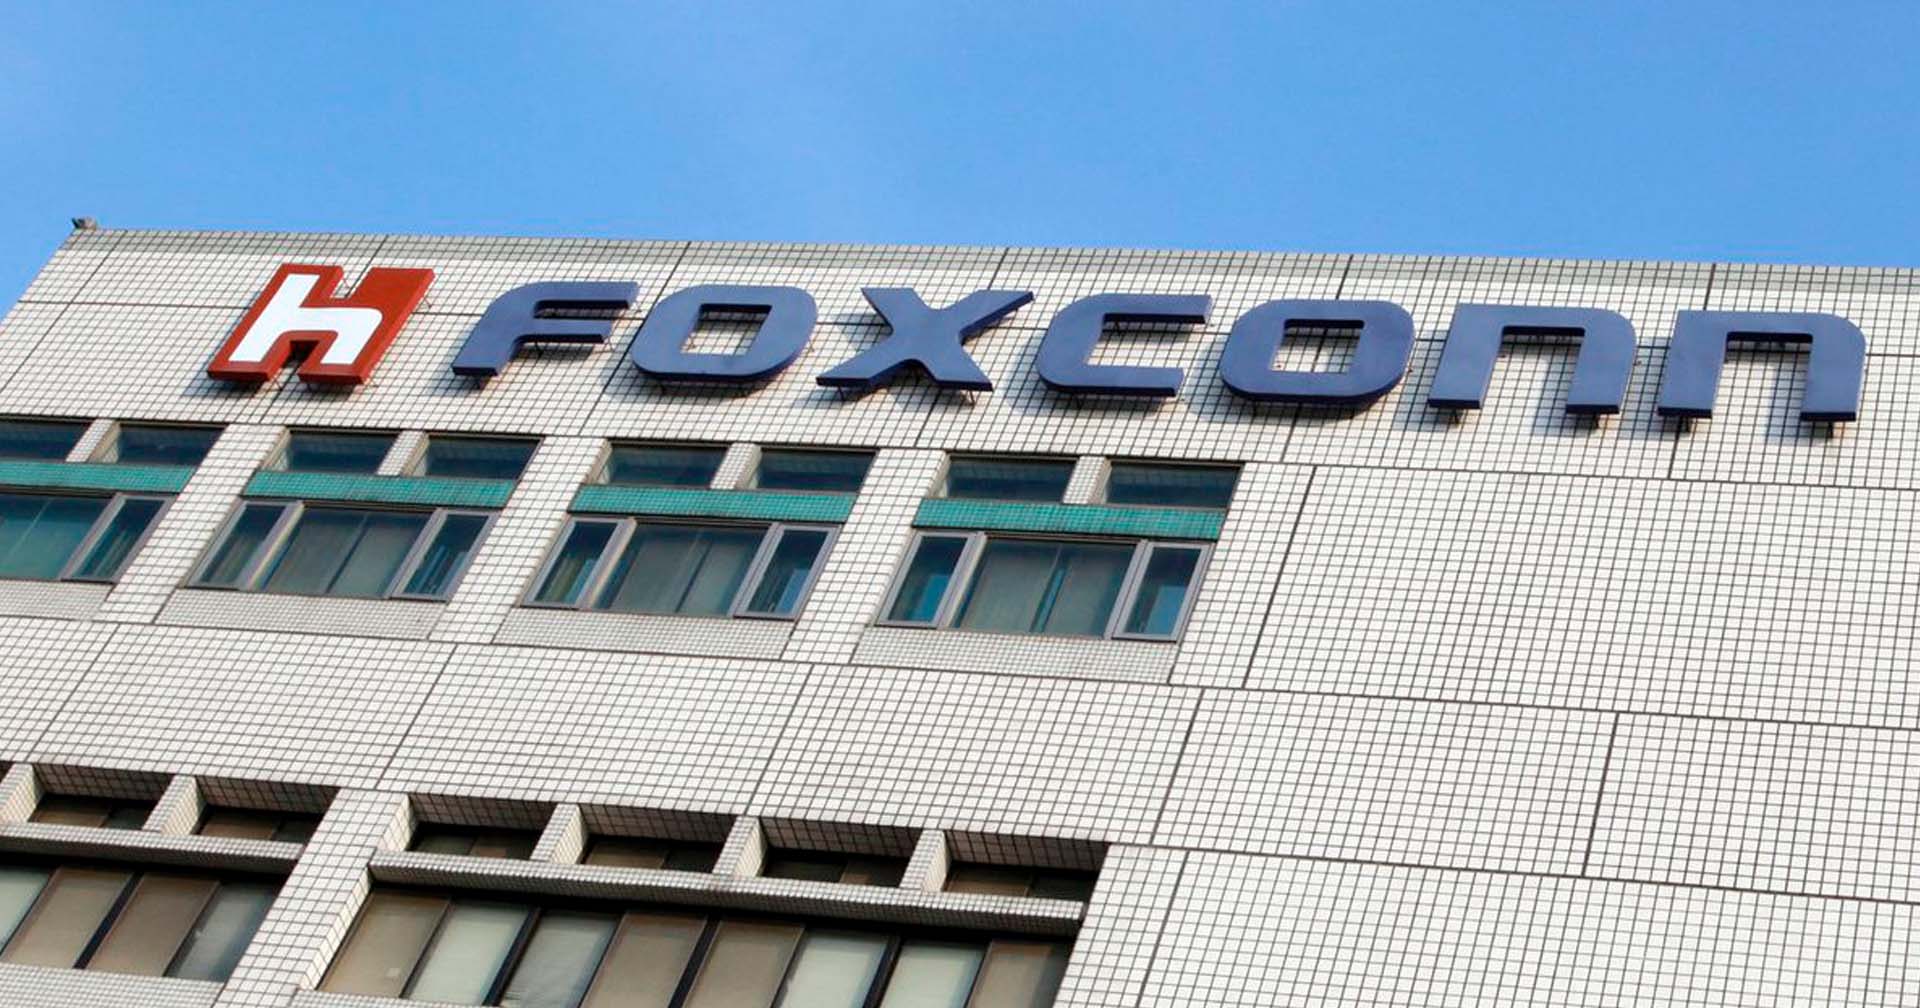 พนักงาน Foxconn ปีนรั้วหนีล็อกดาวน์ หลังโรงงานสั่งกักตัวเพื่อเร่งผลิต iPhone 14